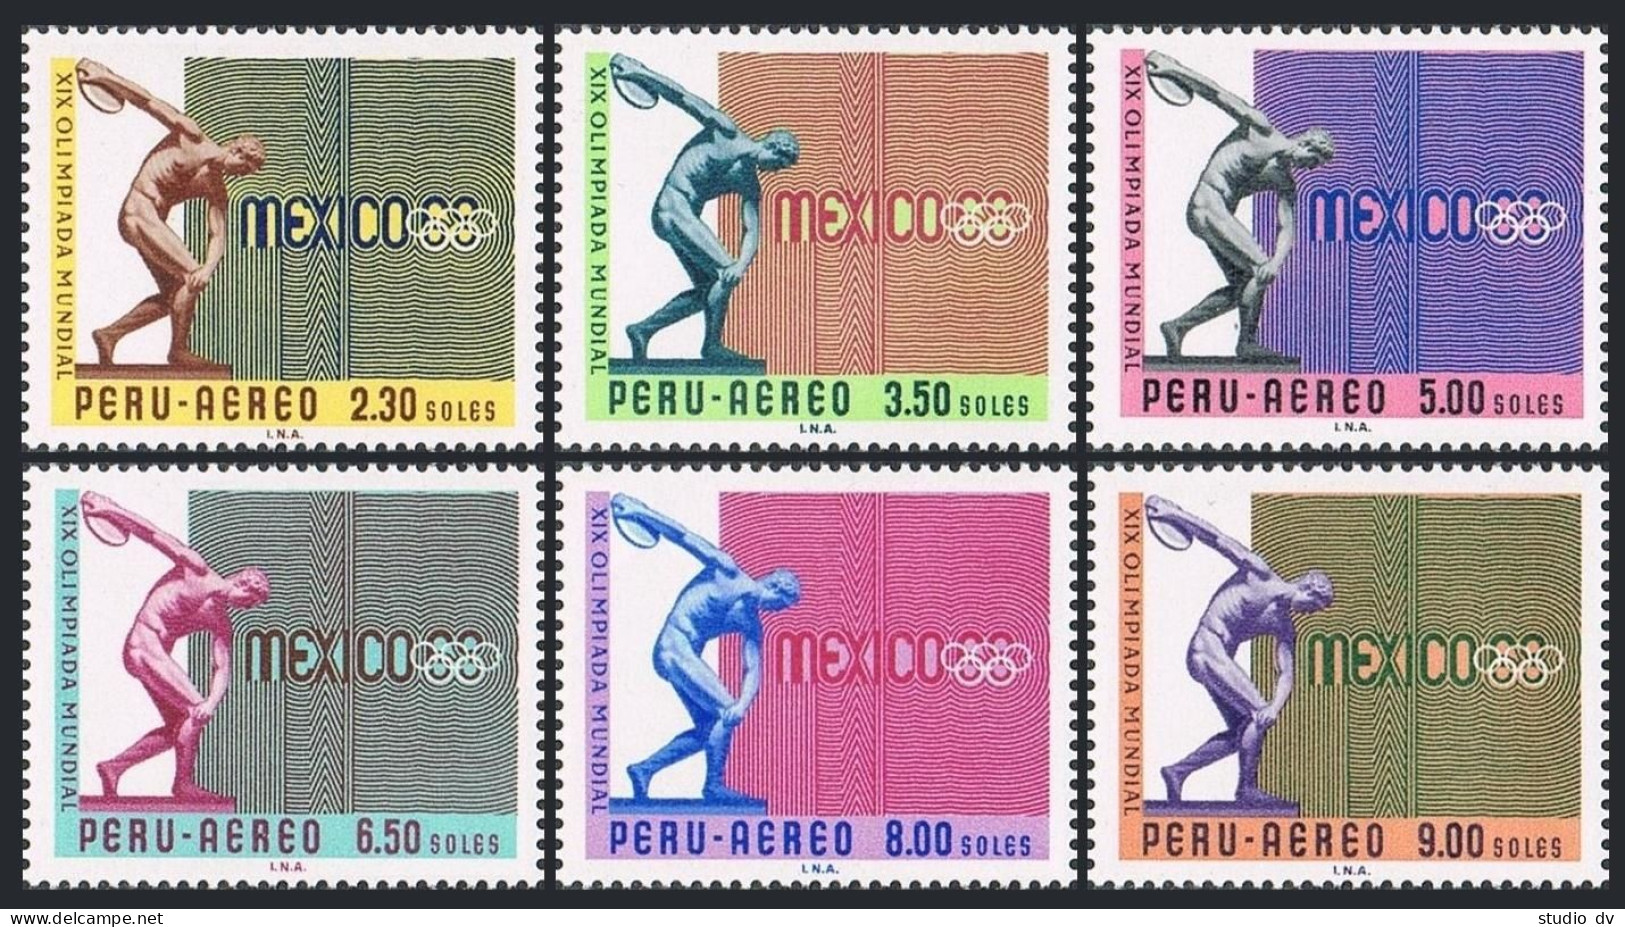 Peru C226-C231, MNH. Michel 702-707. Olympics Mexico-1968. Discobolus. - Peru